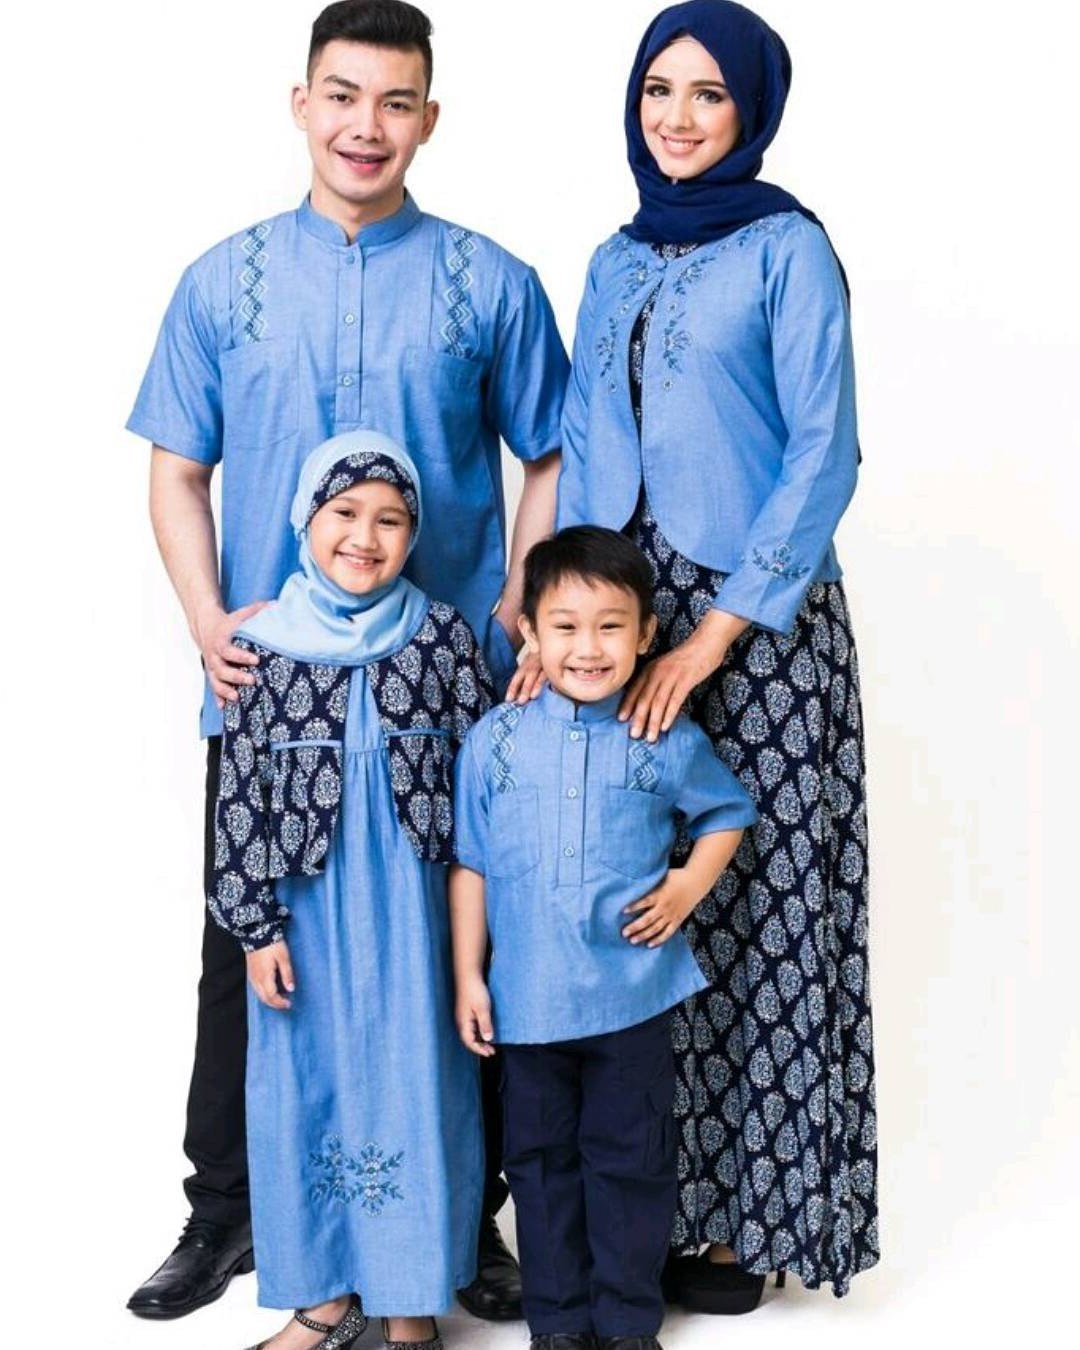 Bentuk Baju Lebaran Keluarga 2020 Kvdd Model Baju Keluarga Untuk Hari Raya Lebaran 2018